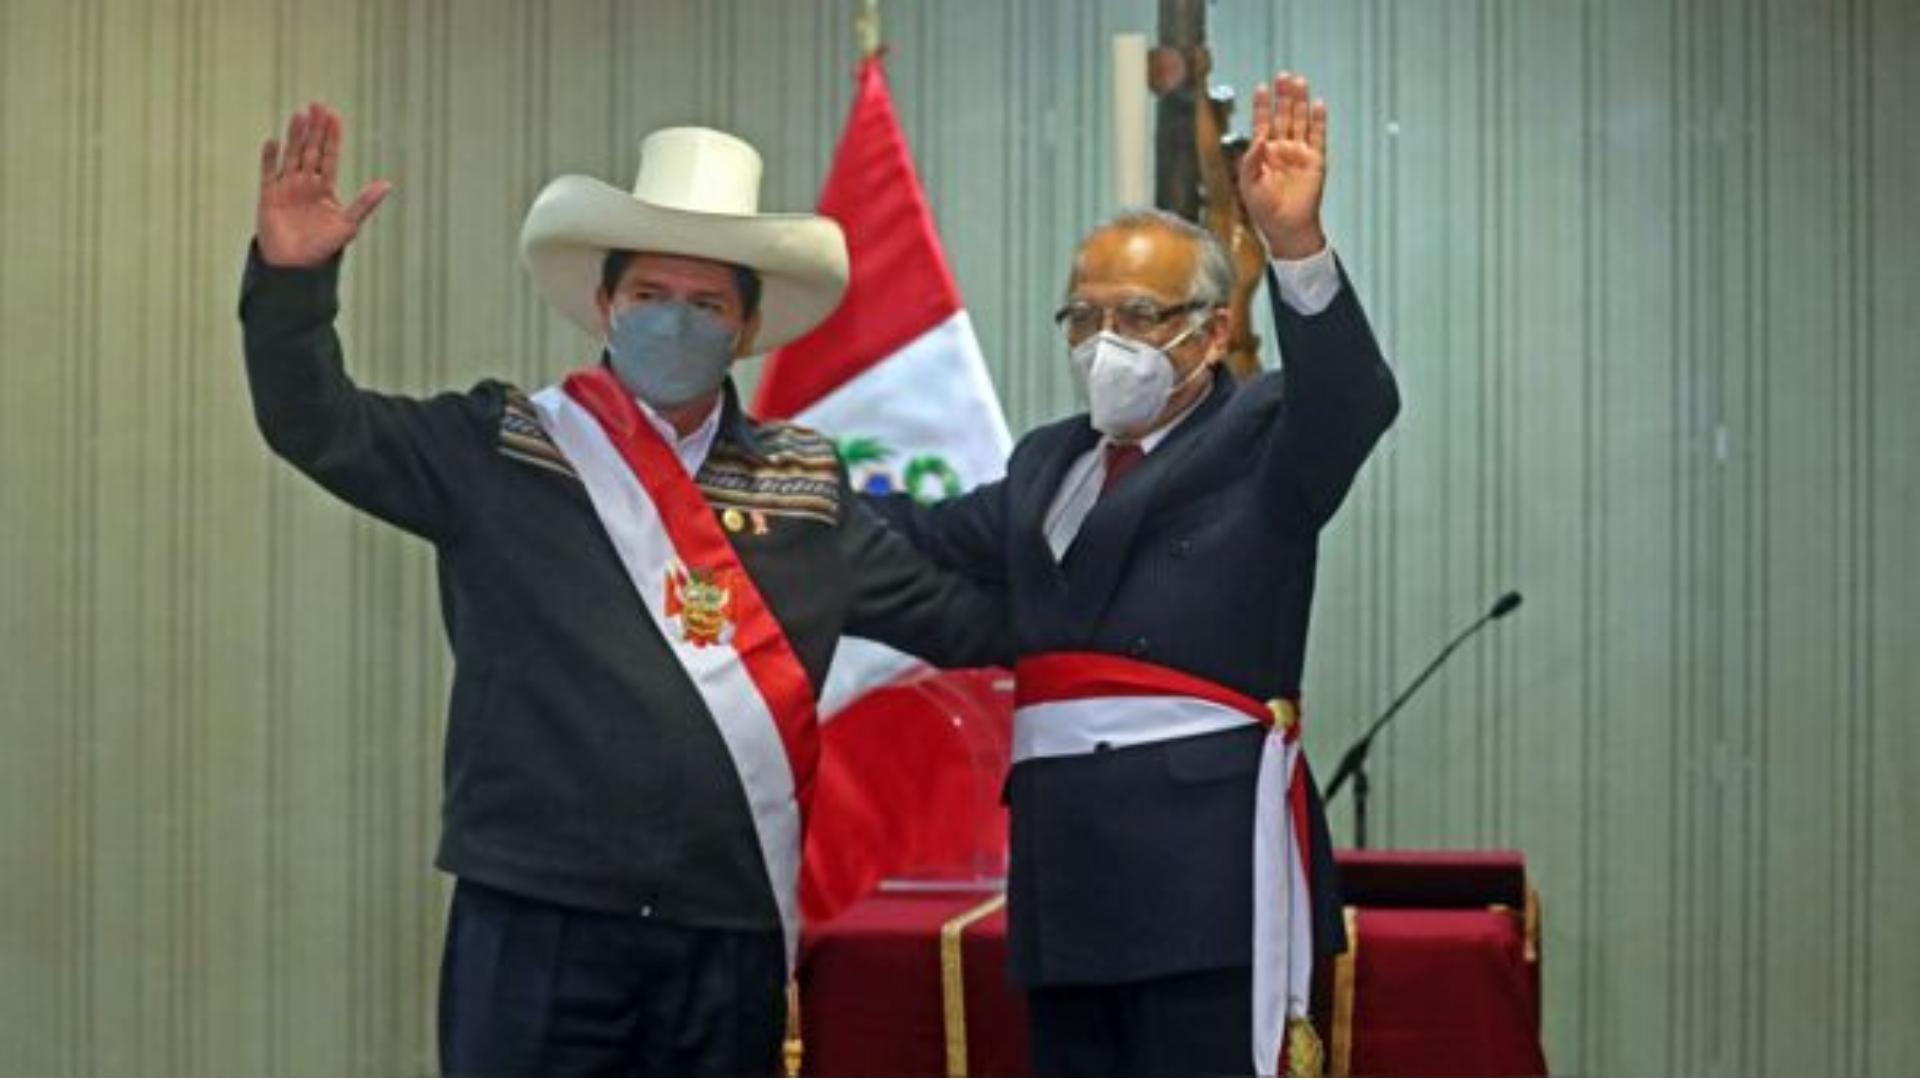 Pedro Castillo y Aníbal Torres, gobernantes izquierdistas de Perú. Foto: Andina